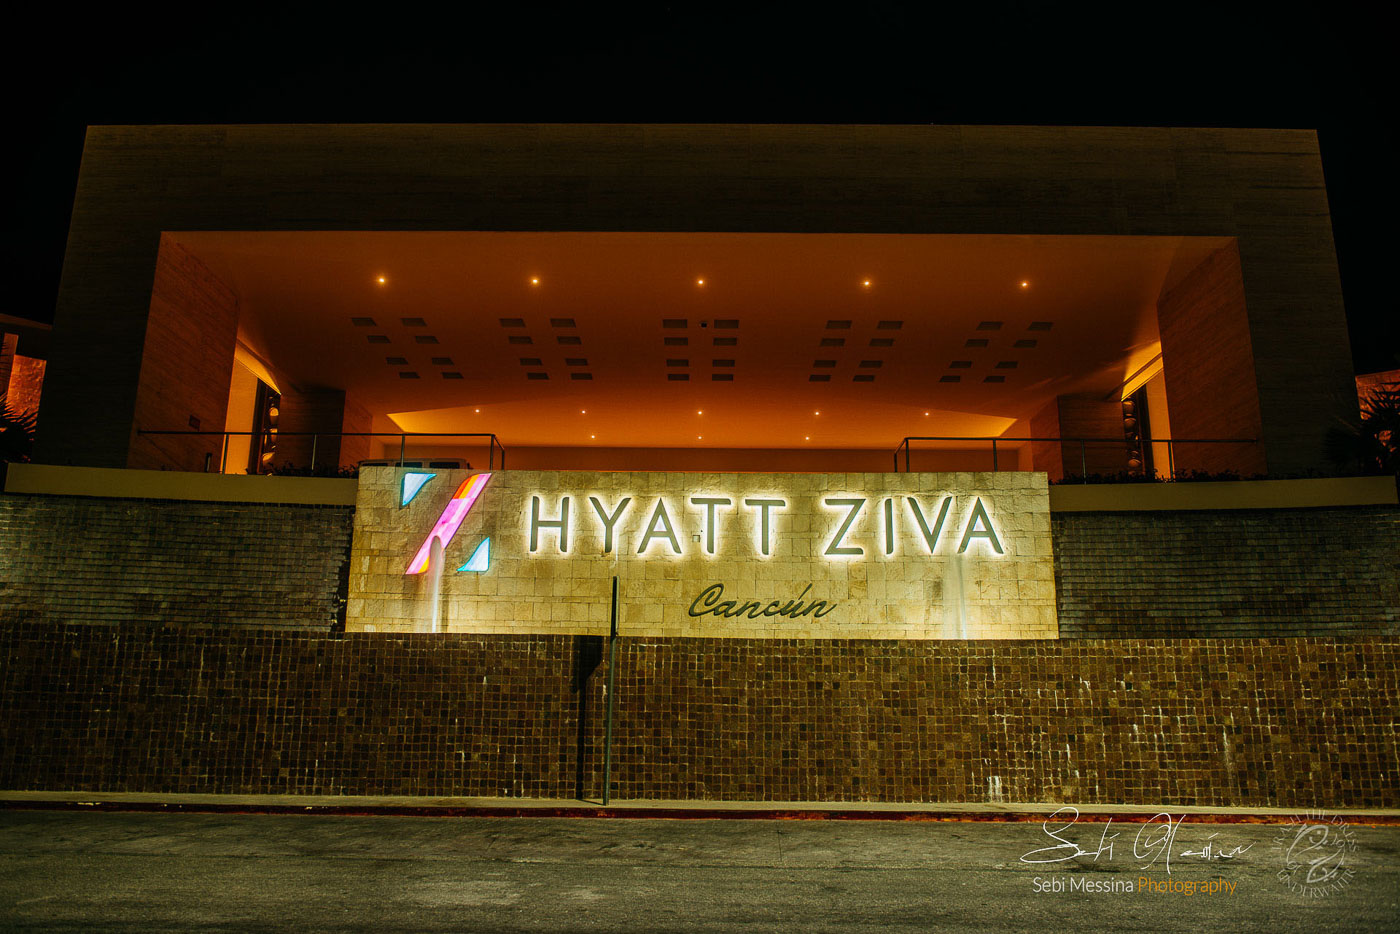 Hyatt Ziva Cancun - Sebi Messina Photography